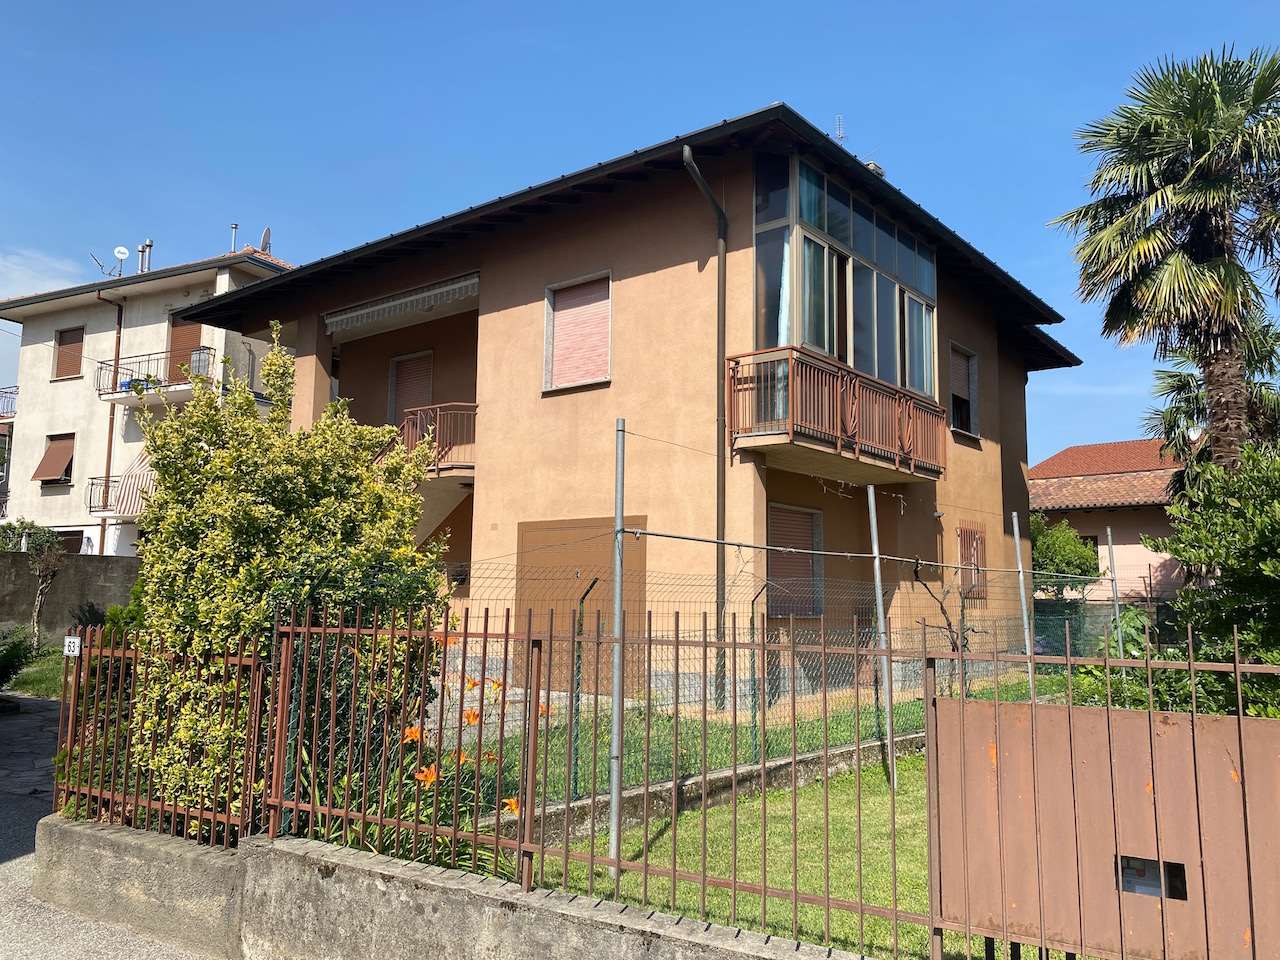 Villa in vendita a Ispra, 8 locali, prezzo € 240.000 | CambioCasa.it